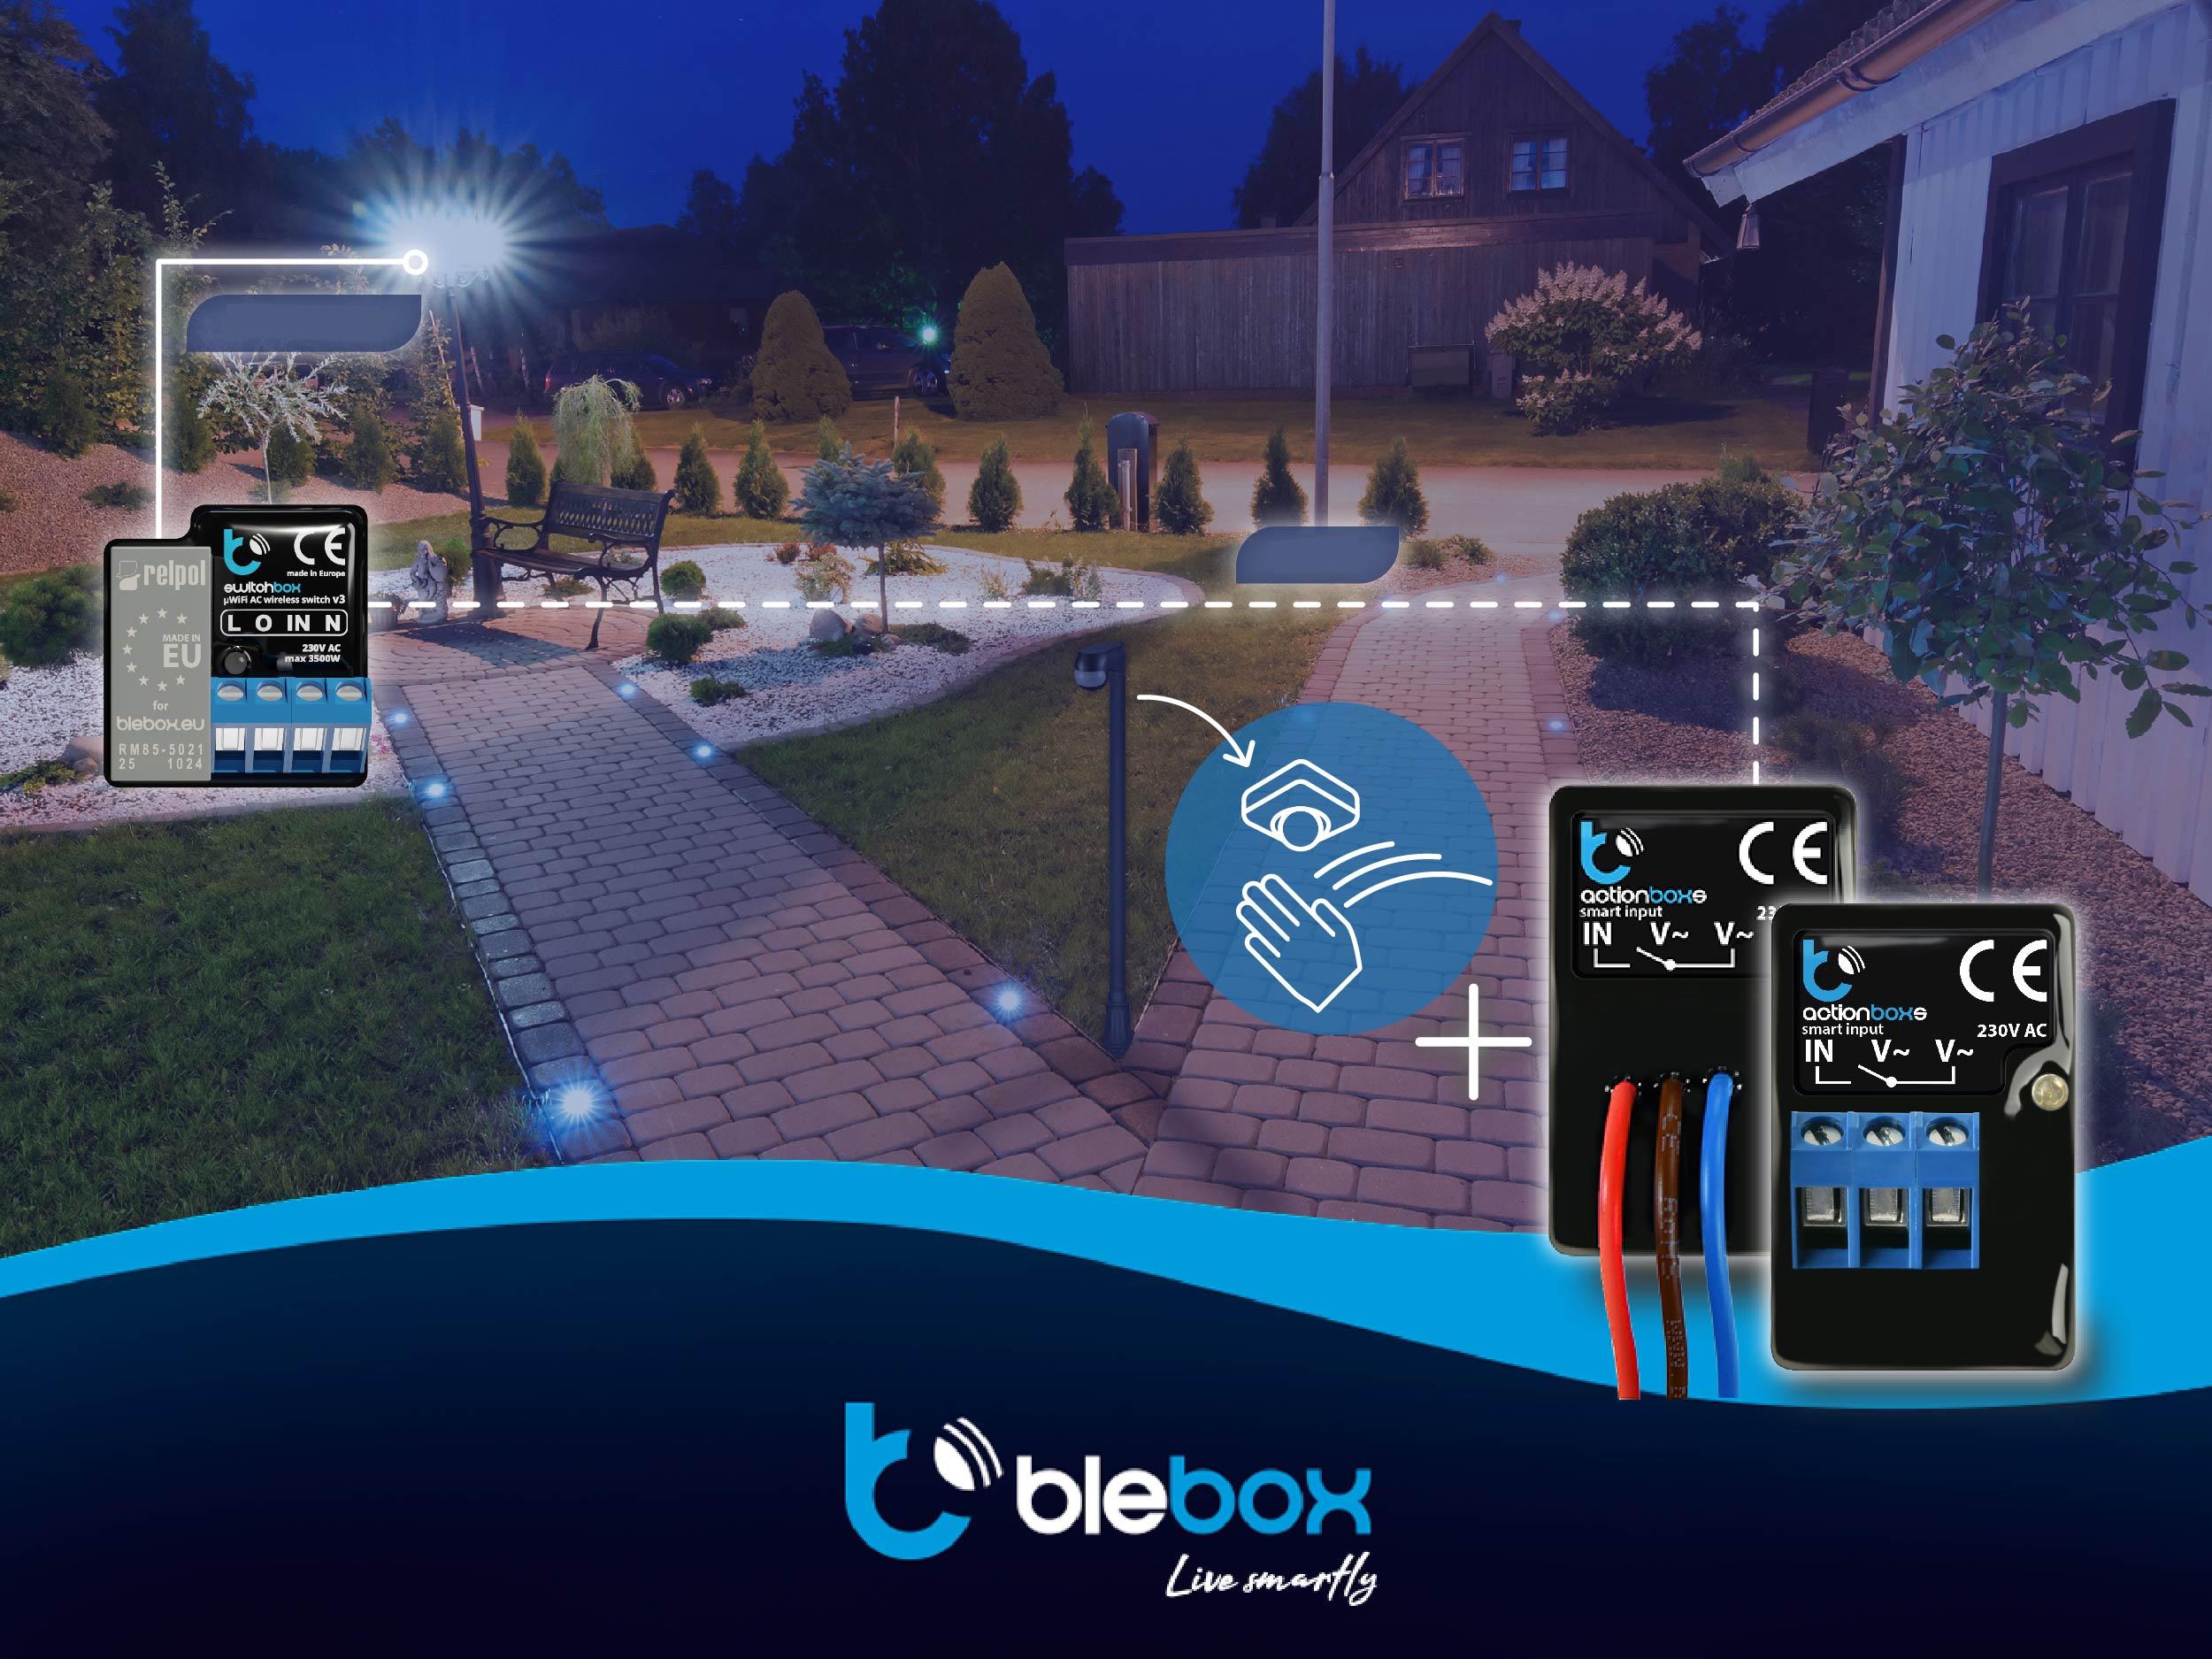 BleBox actionBoxS - wielofunkcyjny wyzwalacz akcji Wi-Fi z możliwością wysyłania powiadomień